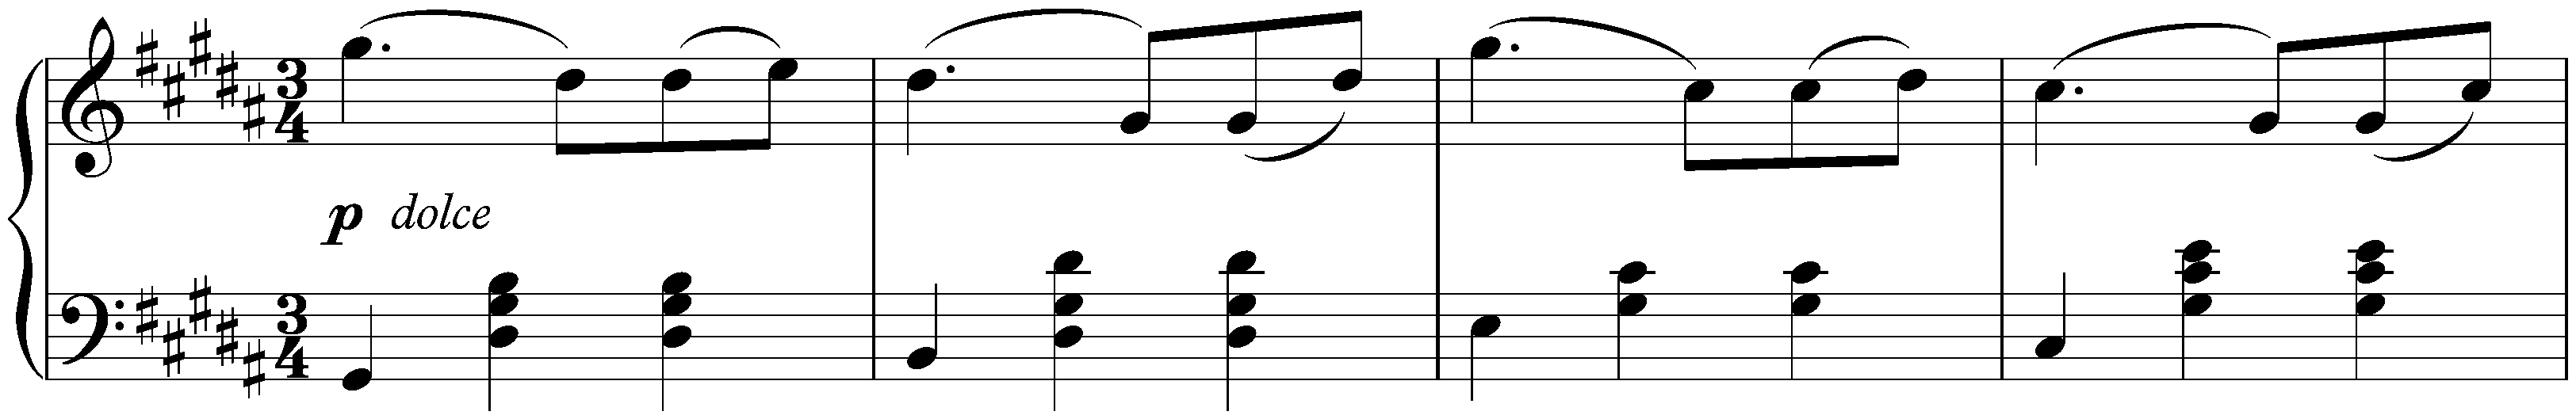 Sixteen Waltzes, op. 39; 3. G-sharp minor